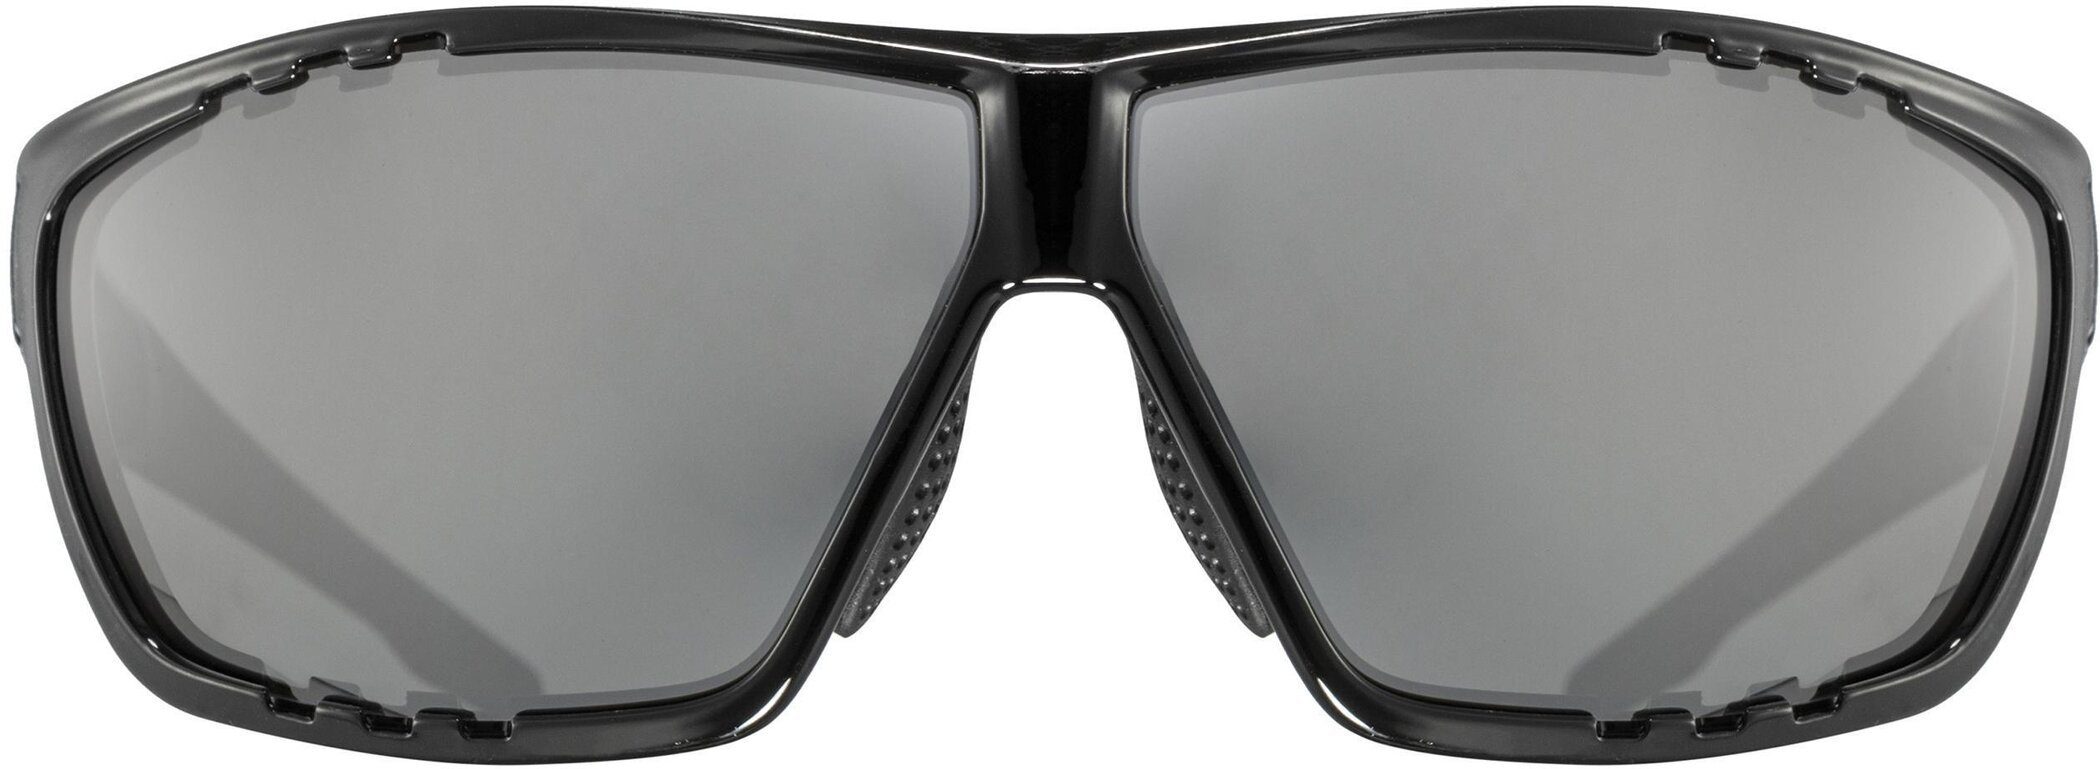 Uvex sportstyle 706 Sonnenbrille BLACK uvex